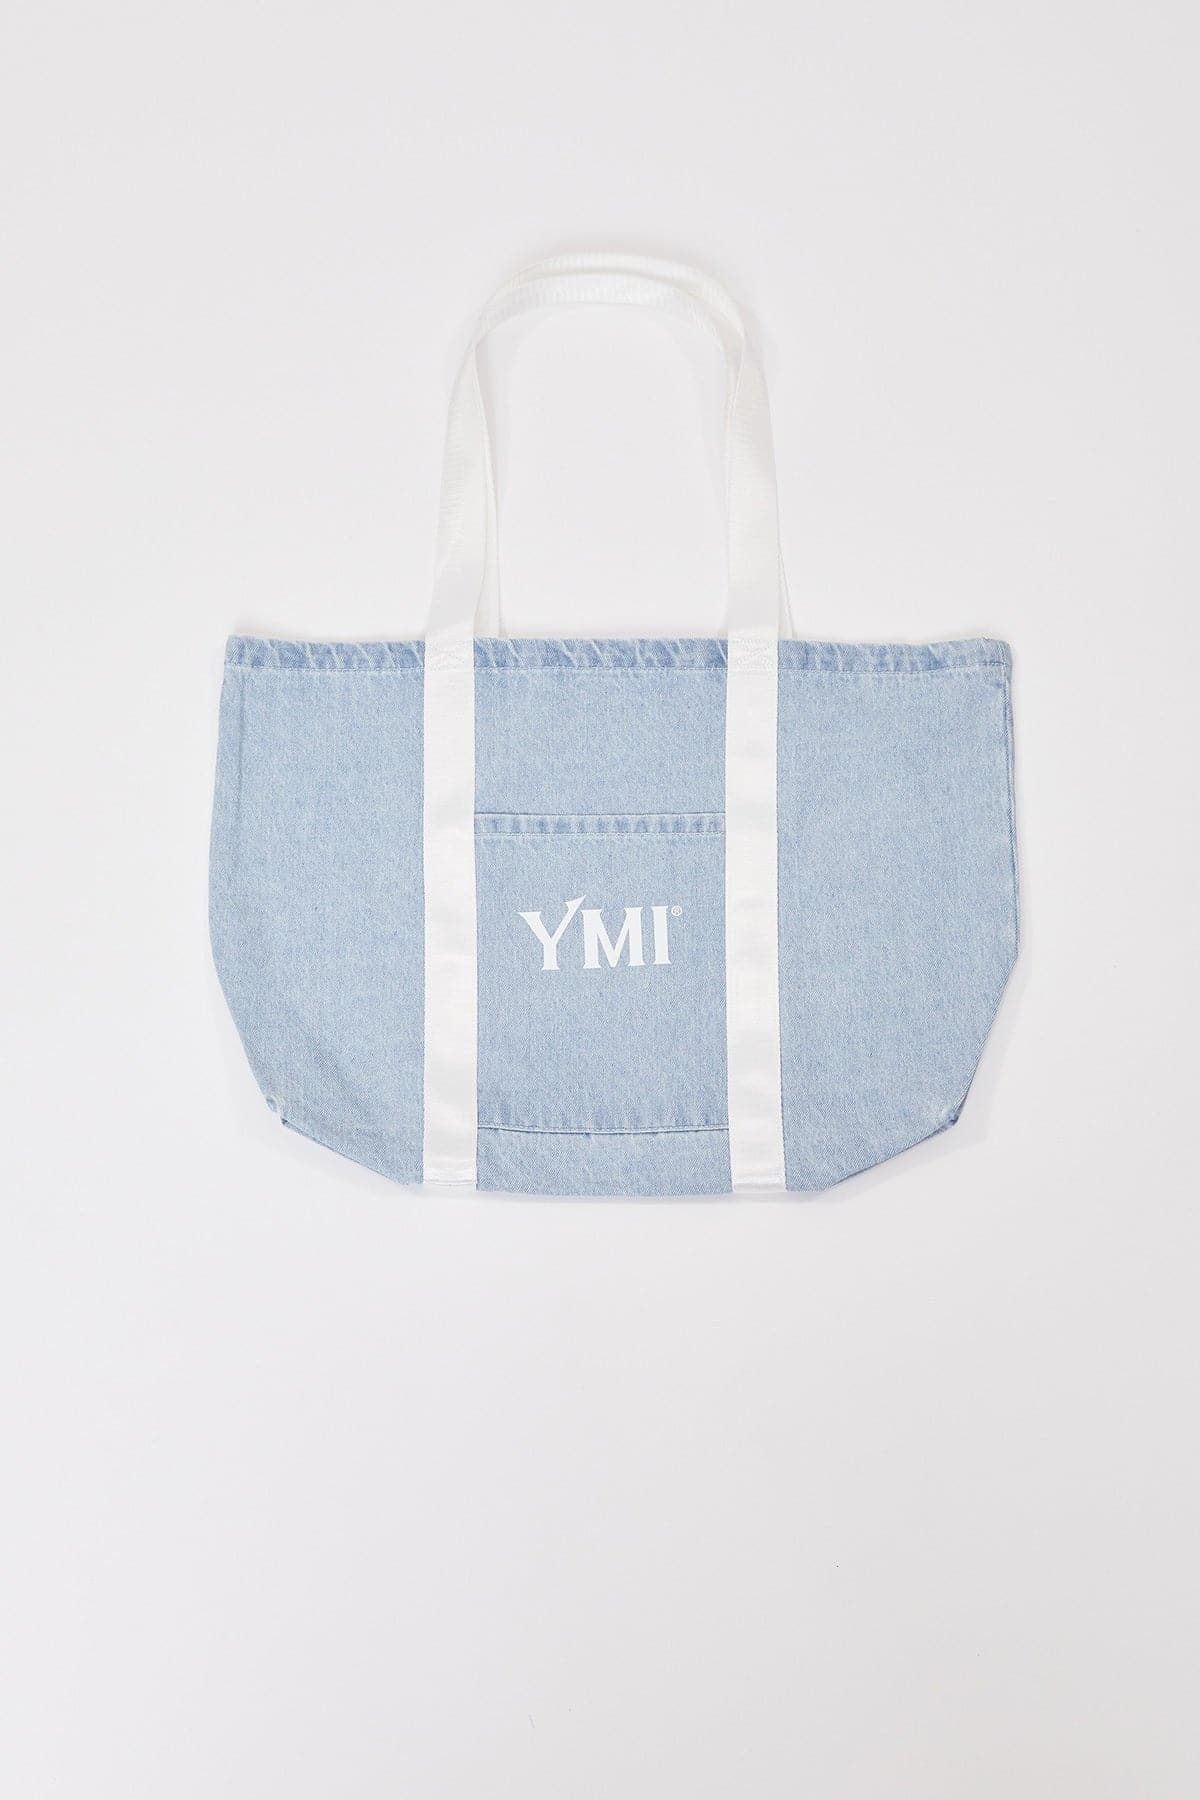 YMI Carryall Tote Bag